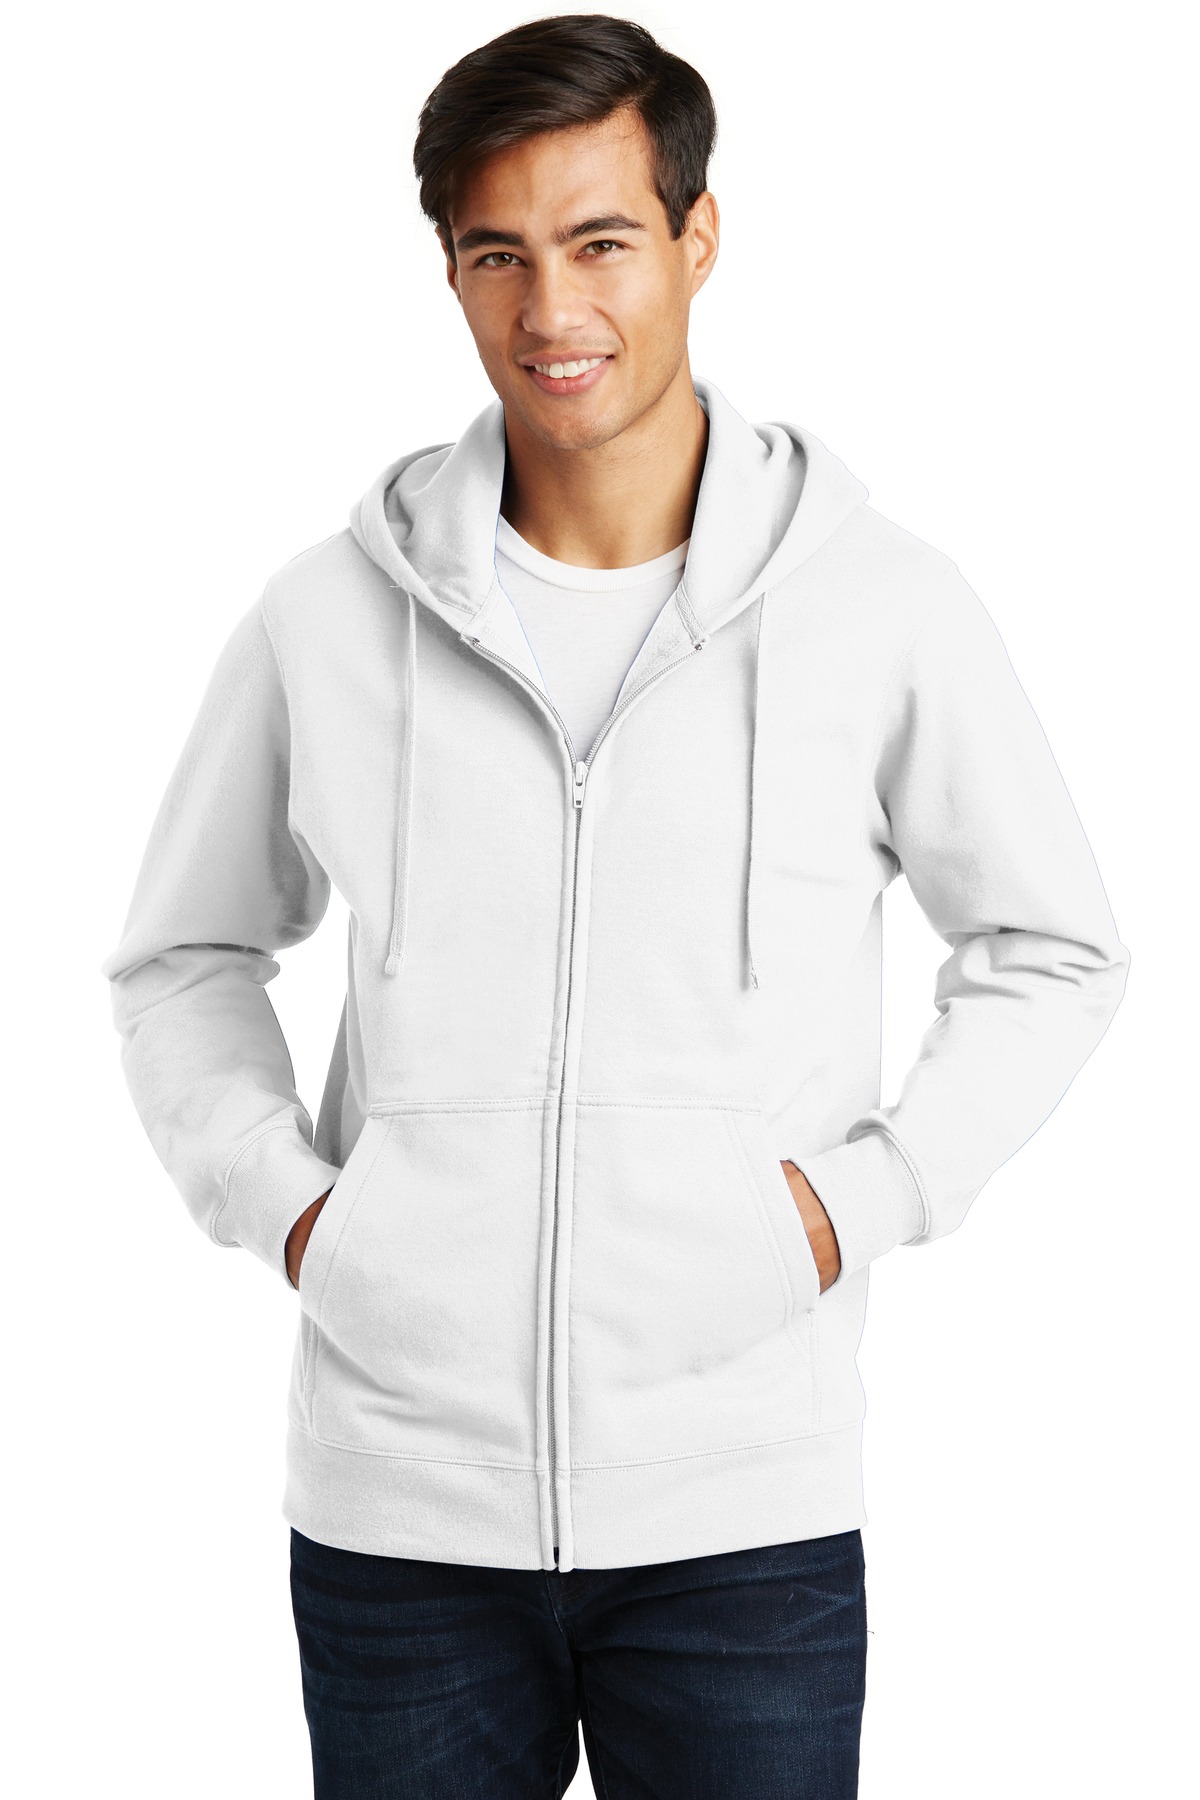 Port and Company Fan Favorite Fleece Full-Zip Hooded Sweatshirt. PC850ZH